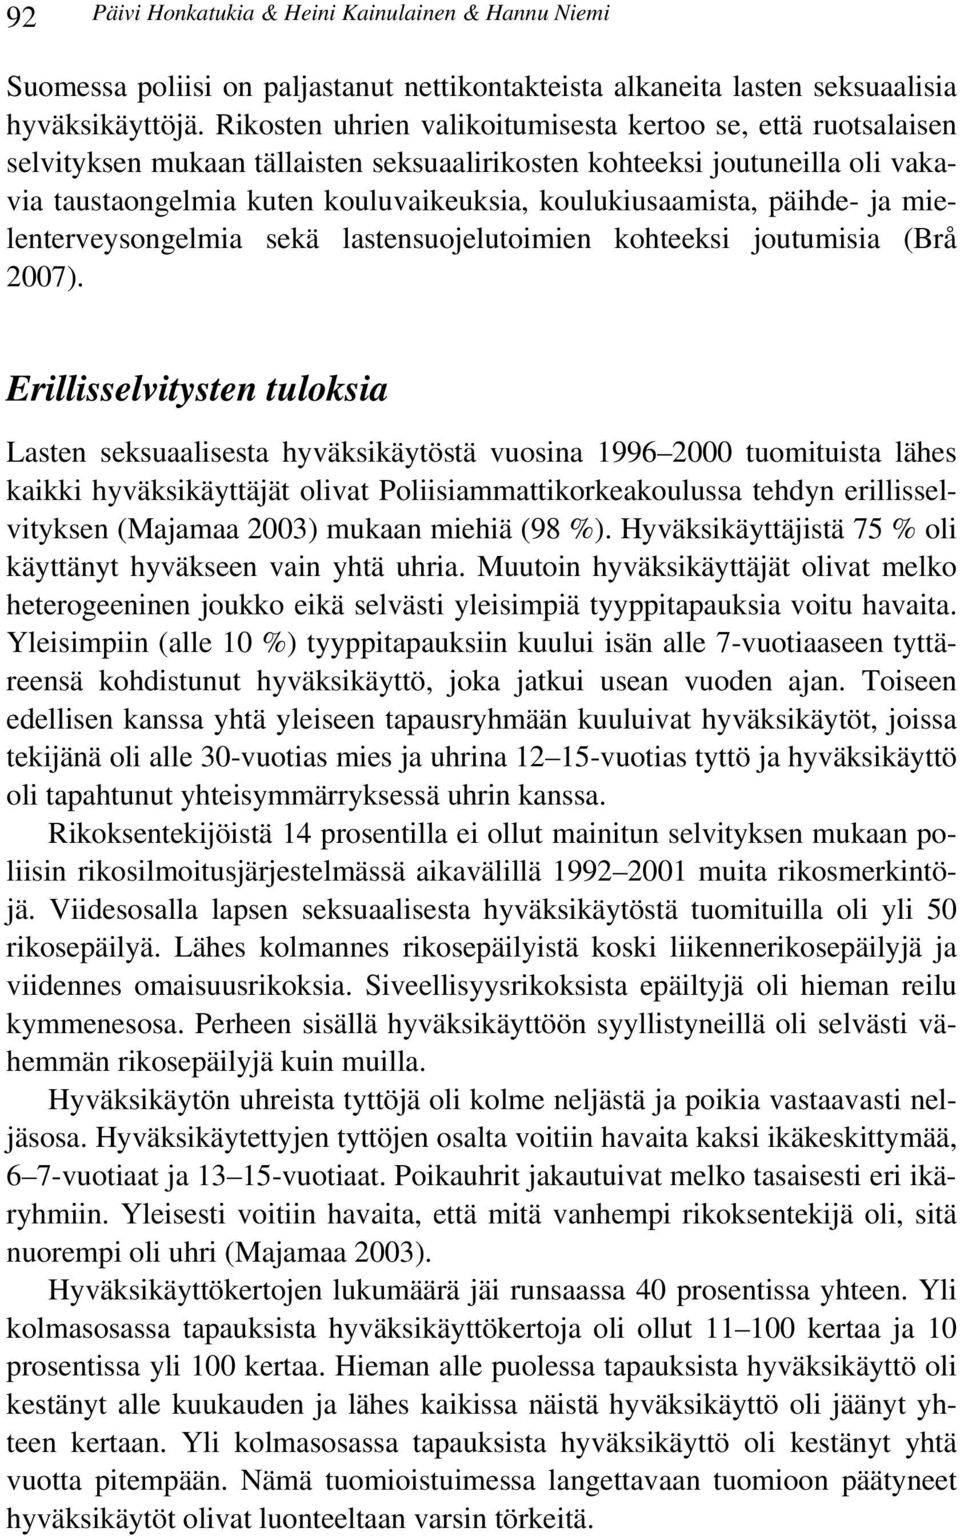 päihde- ja mielenterveysongelmia sekä lastensuojelutoimien kohteeksi joutumisia (Brå 2007).